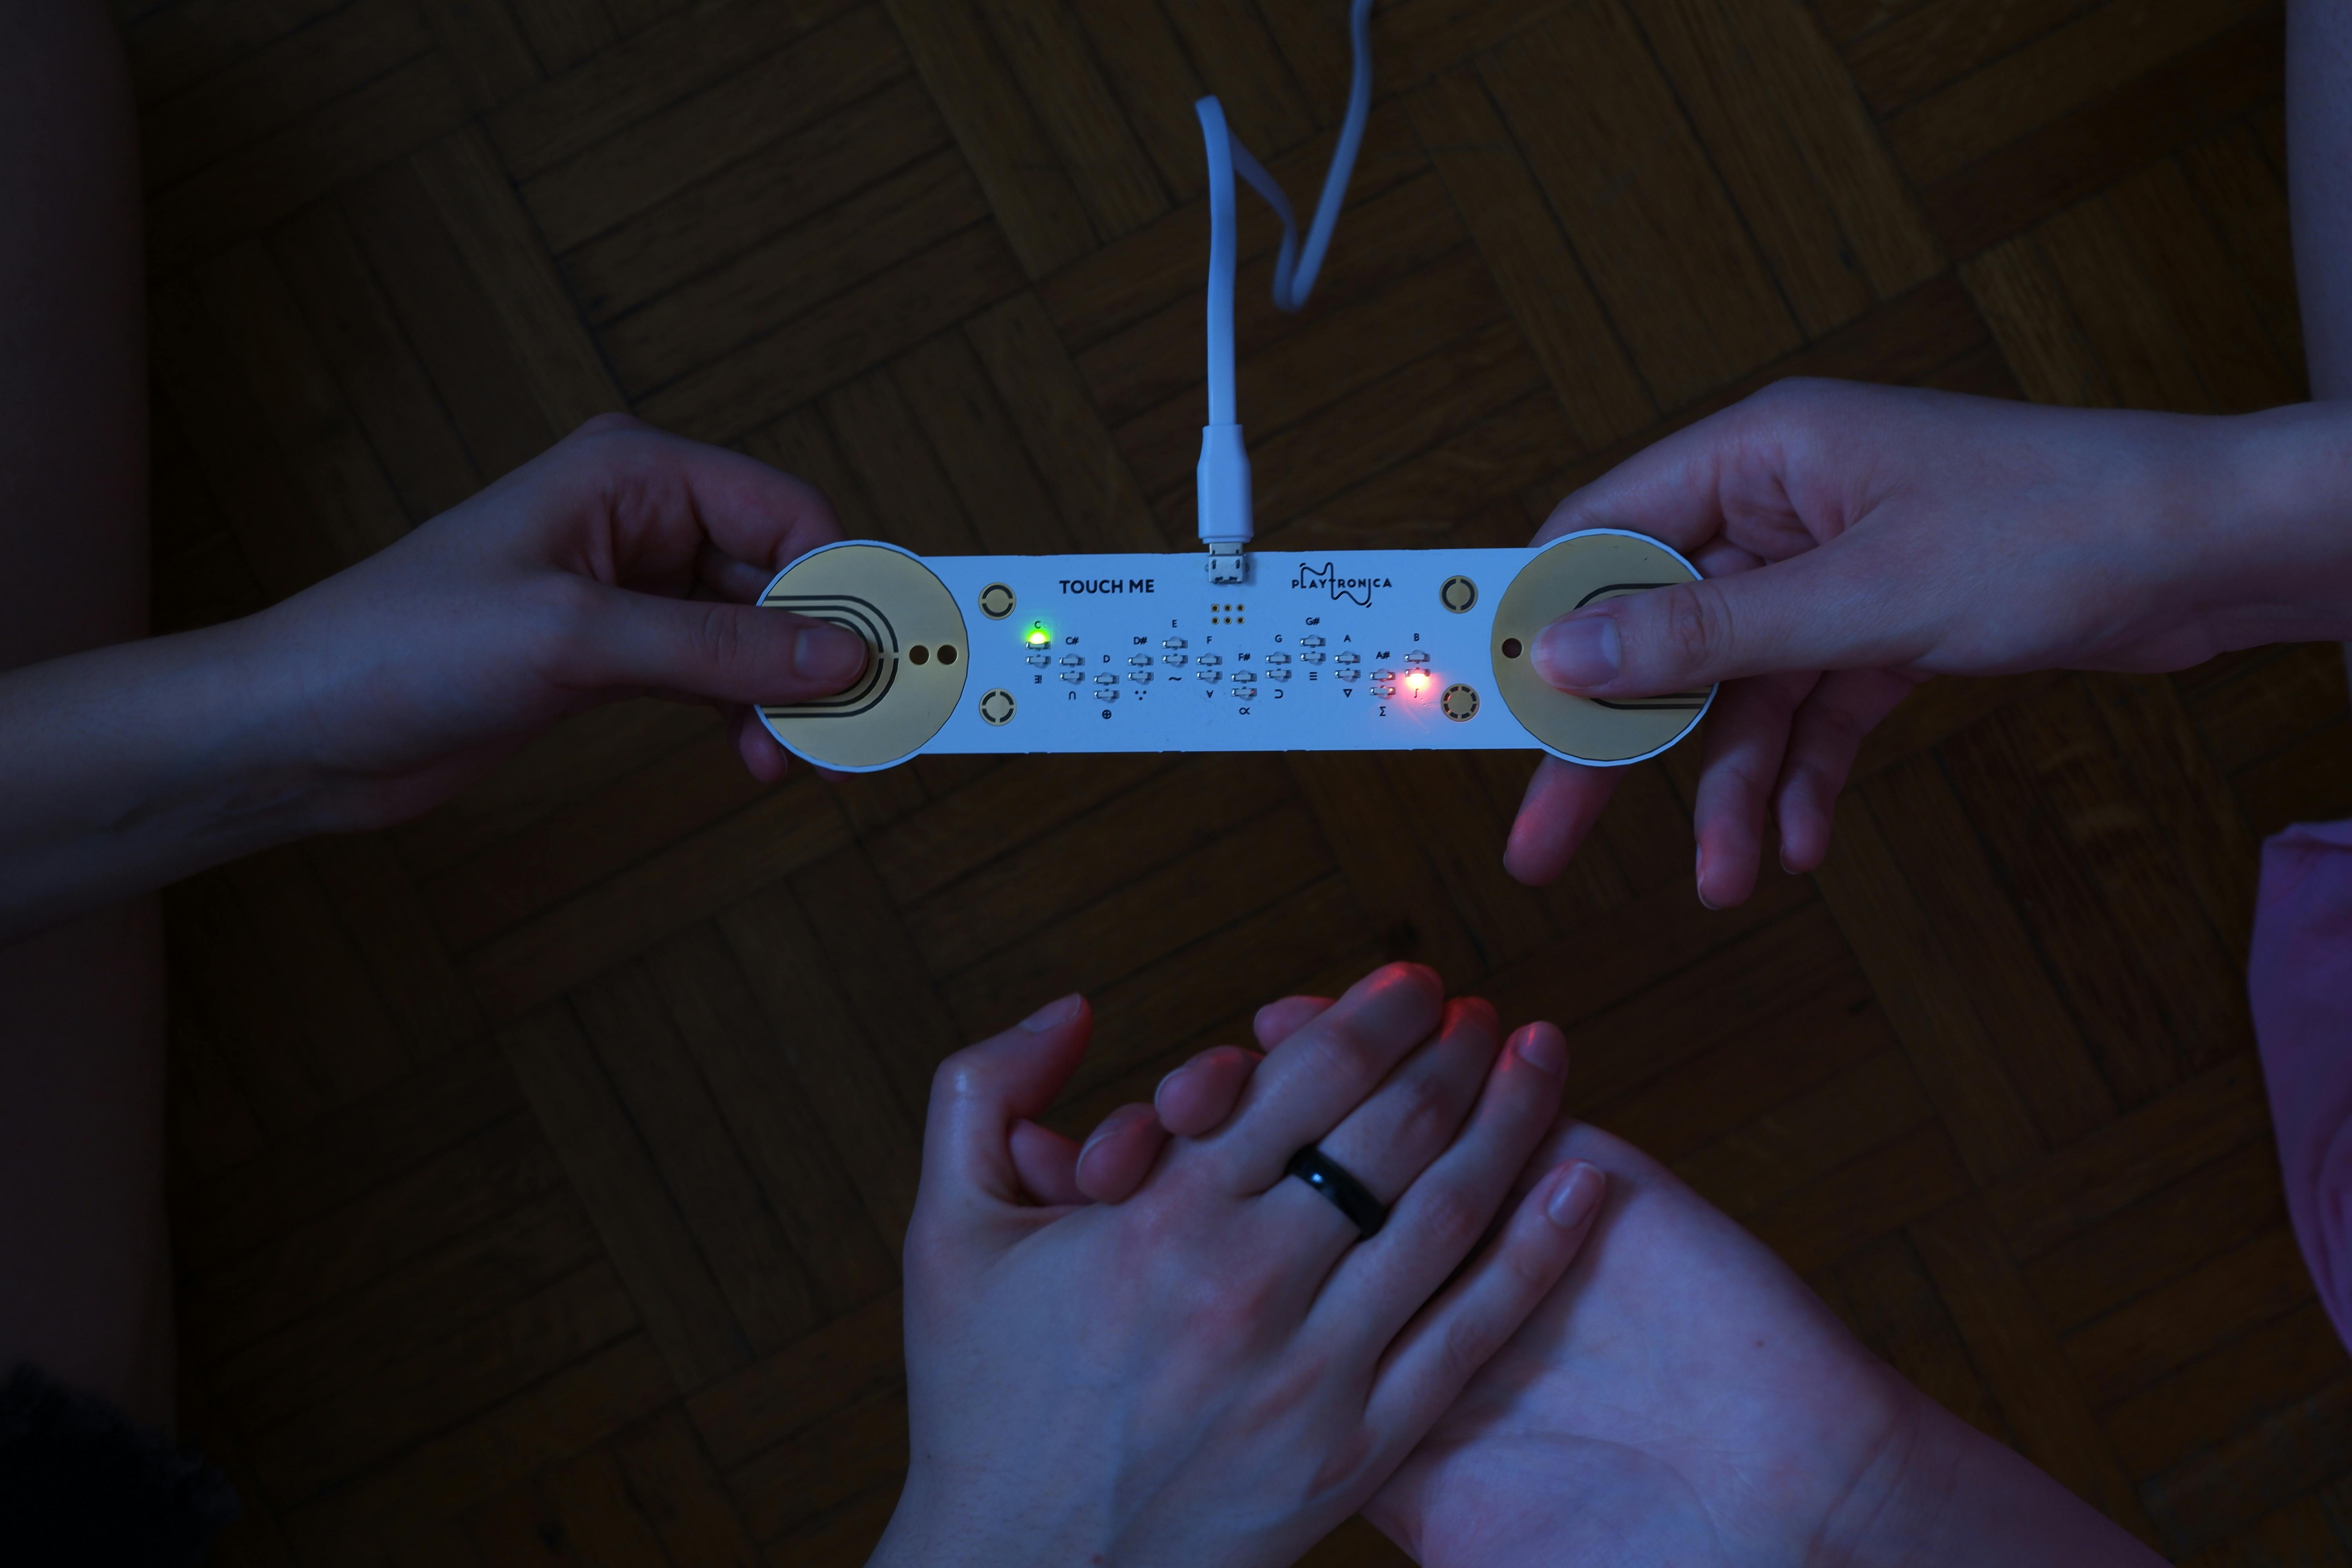 Immagine del dispositivo tecnologico TouchMe usato da due persone che si tengono per mano